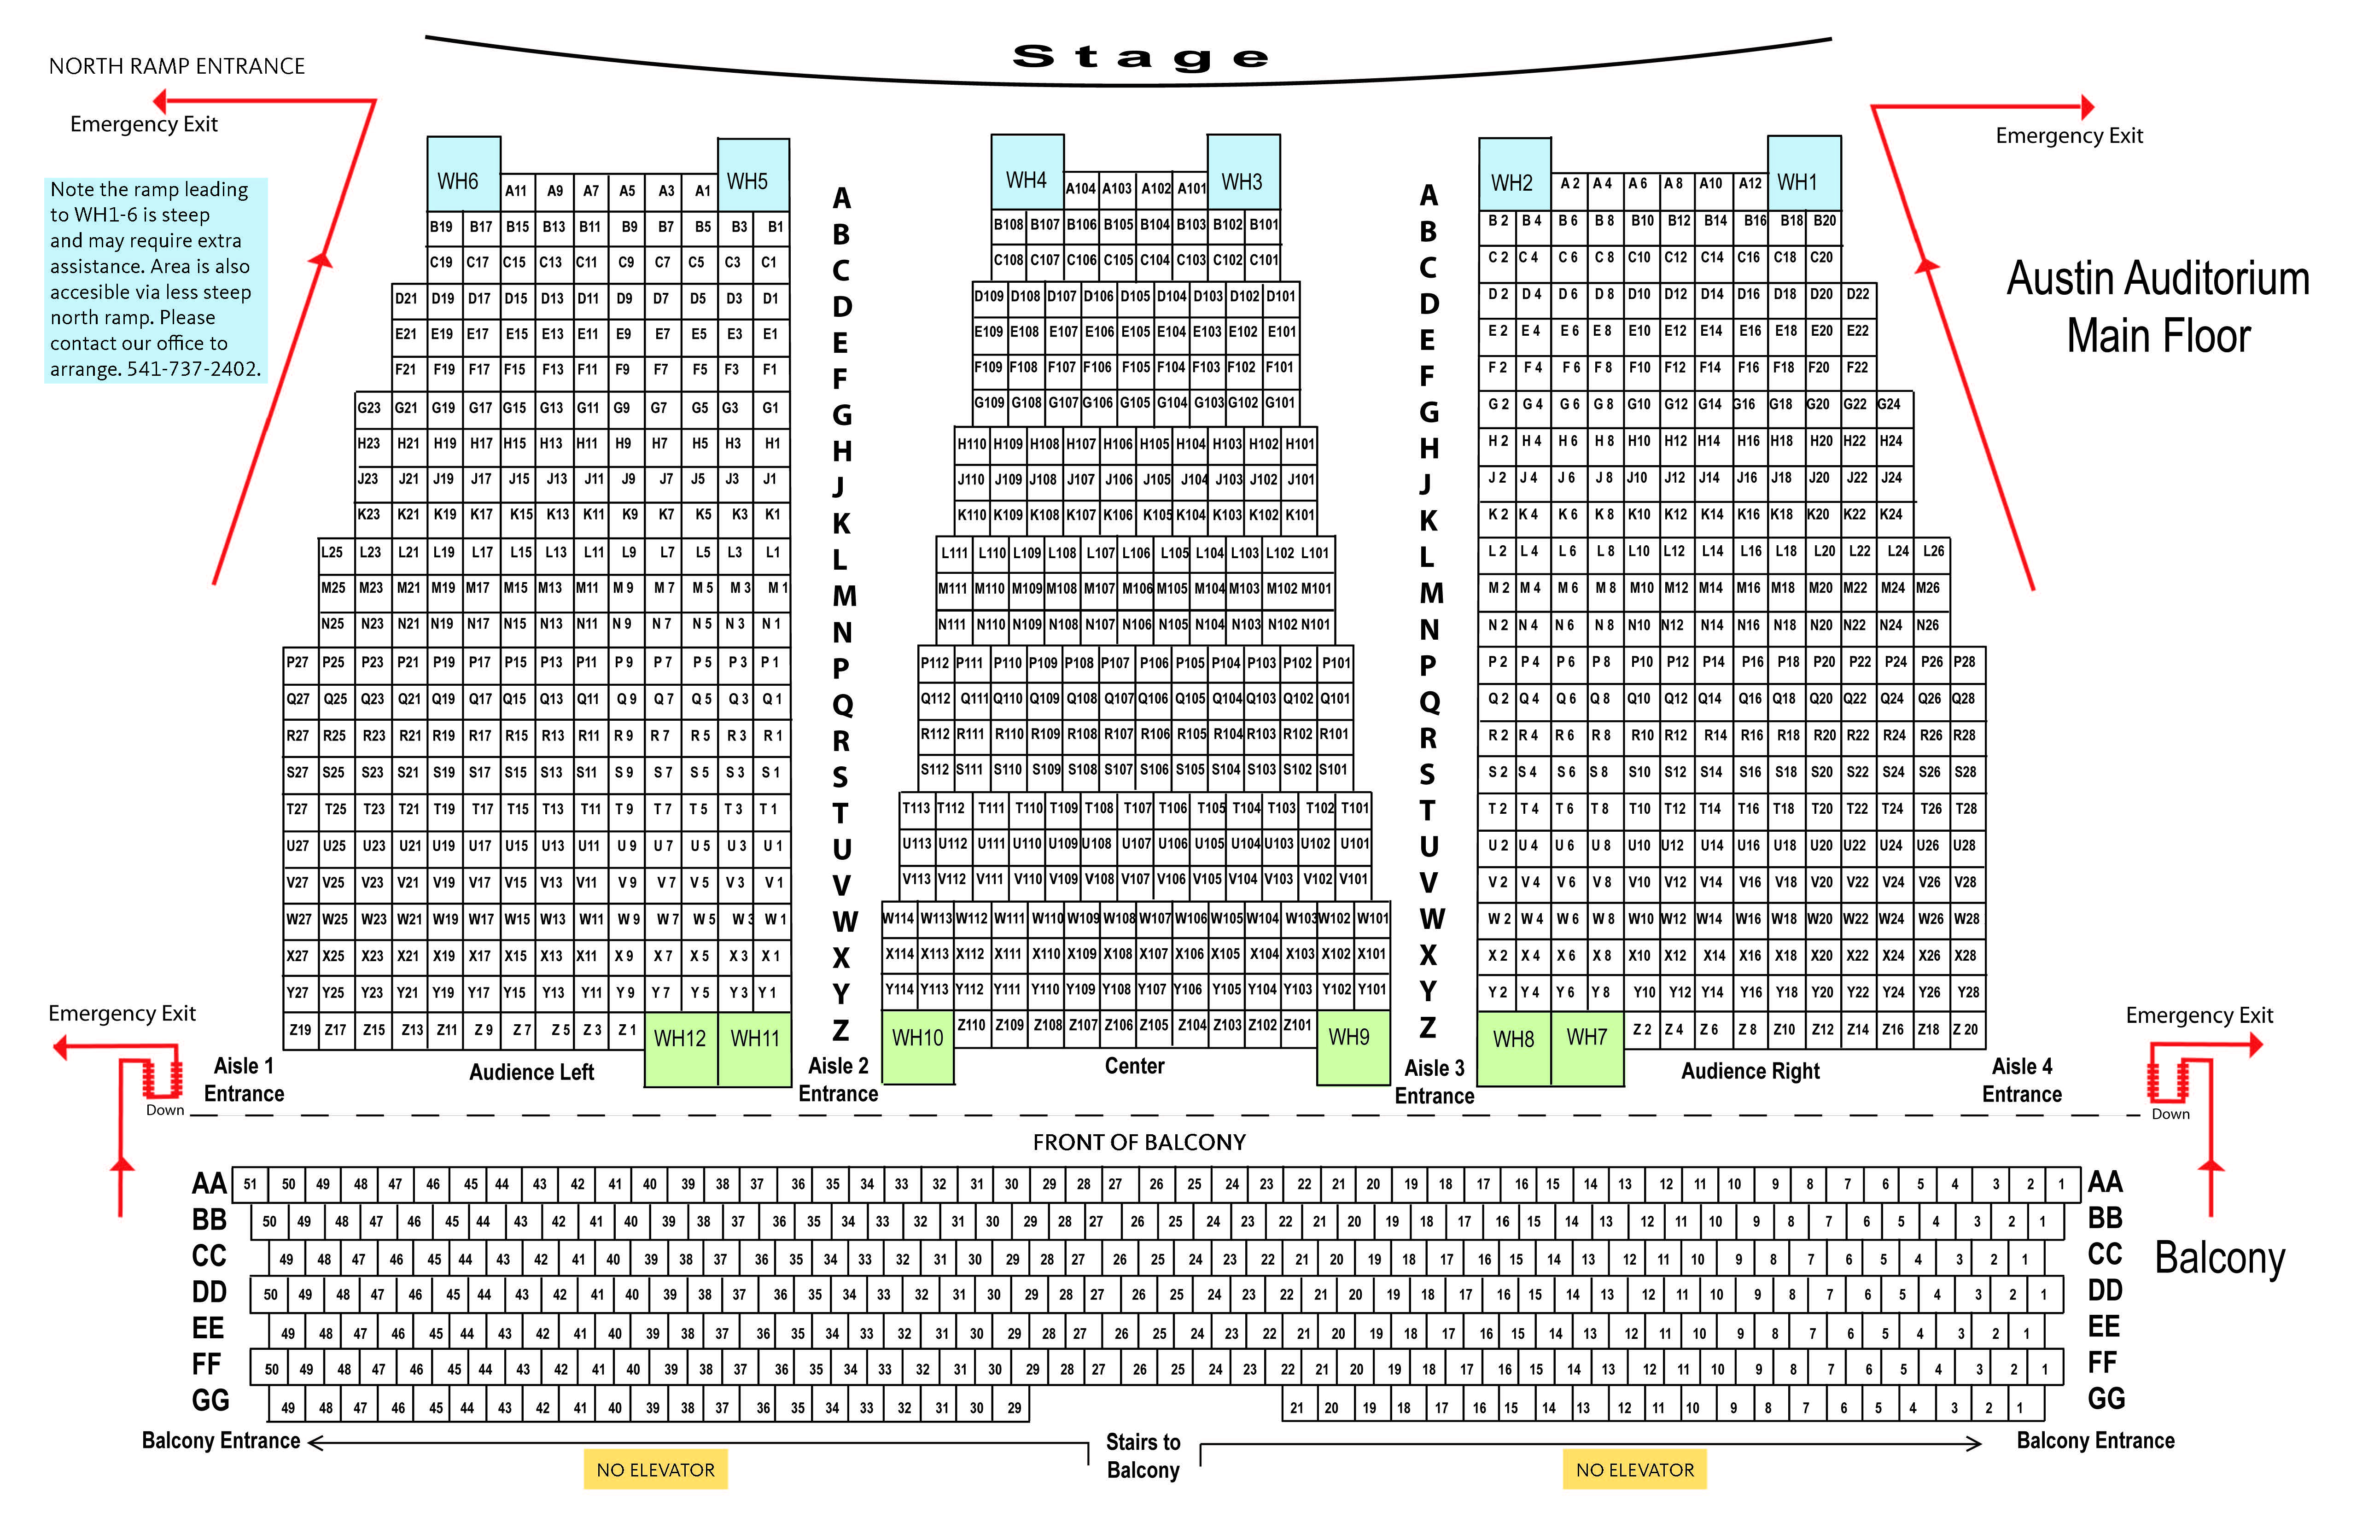 Austin Auditorium seating plan